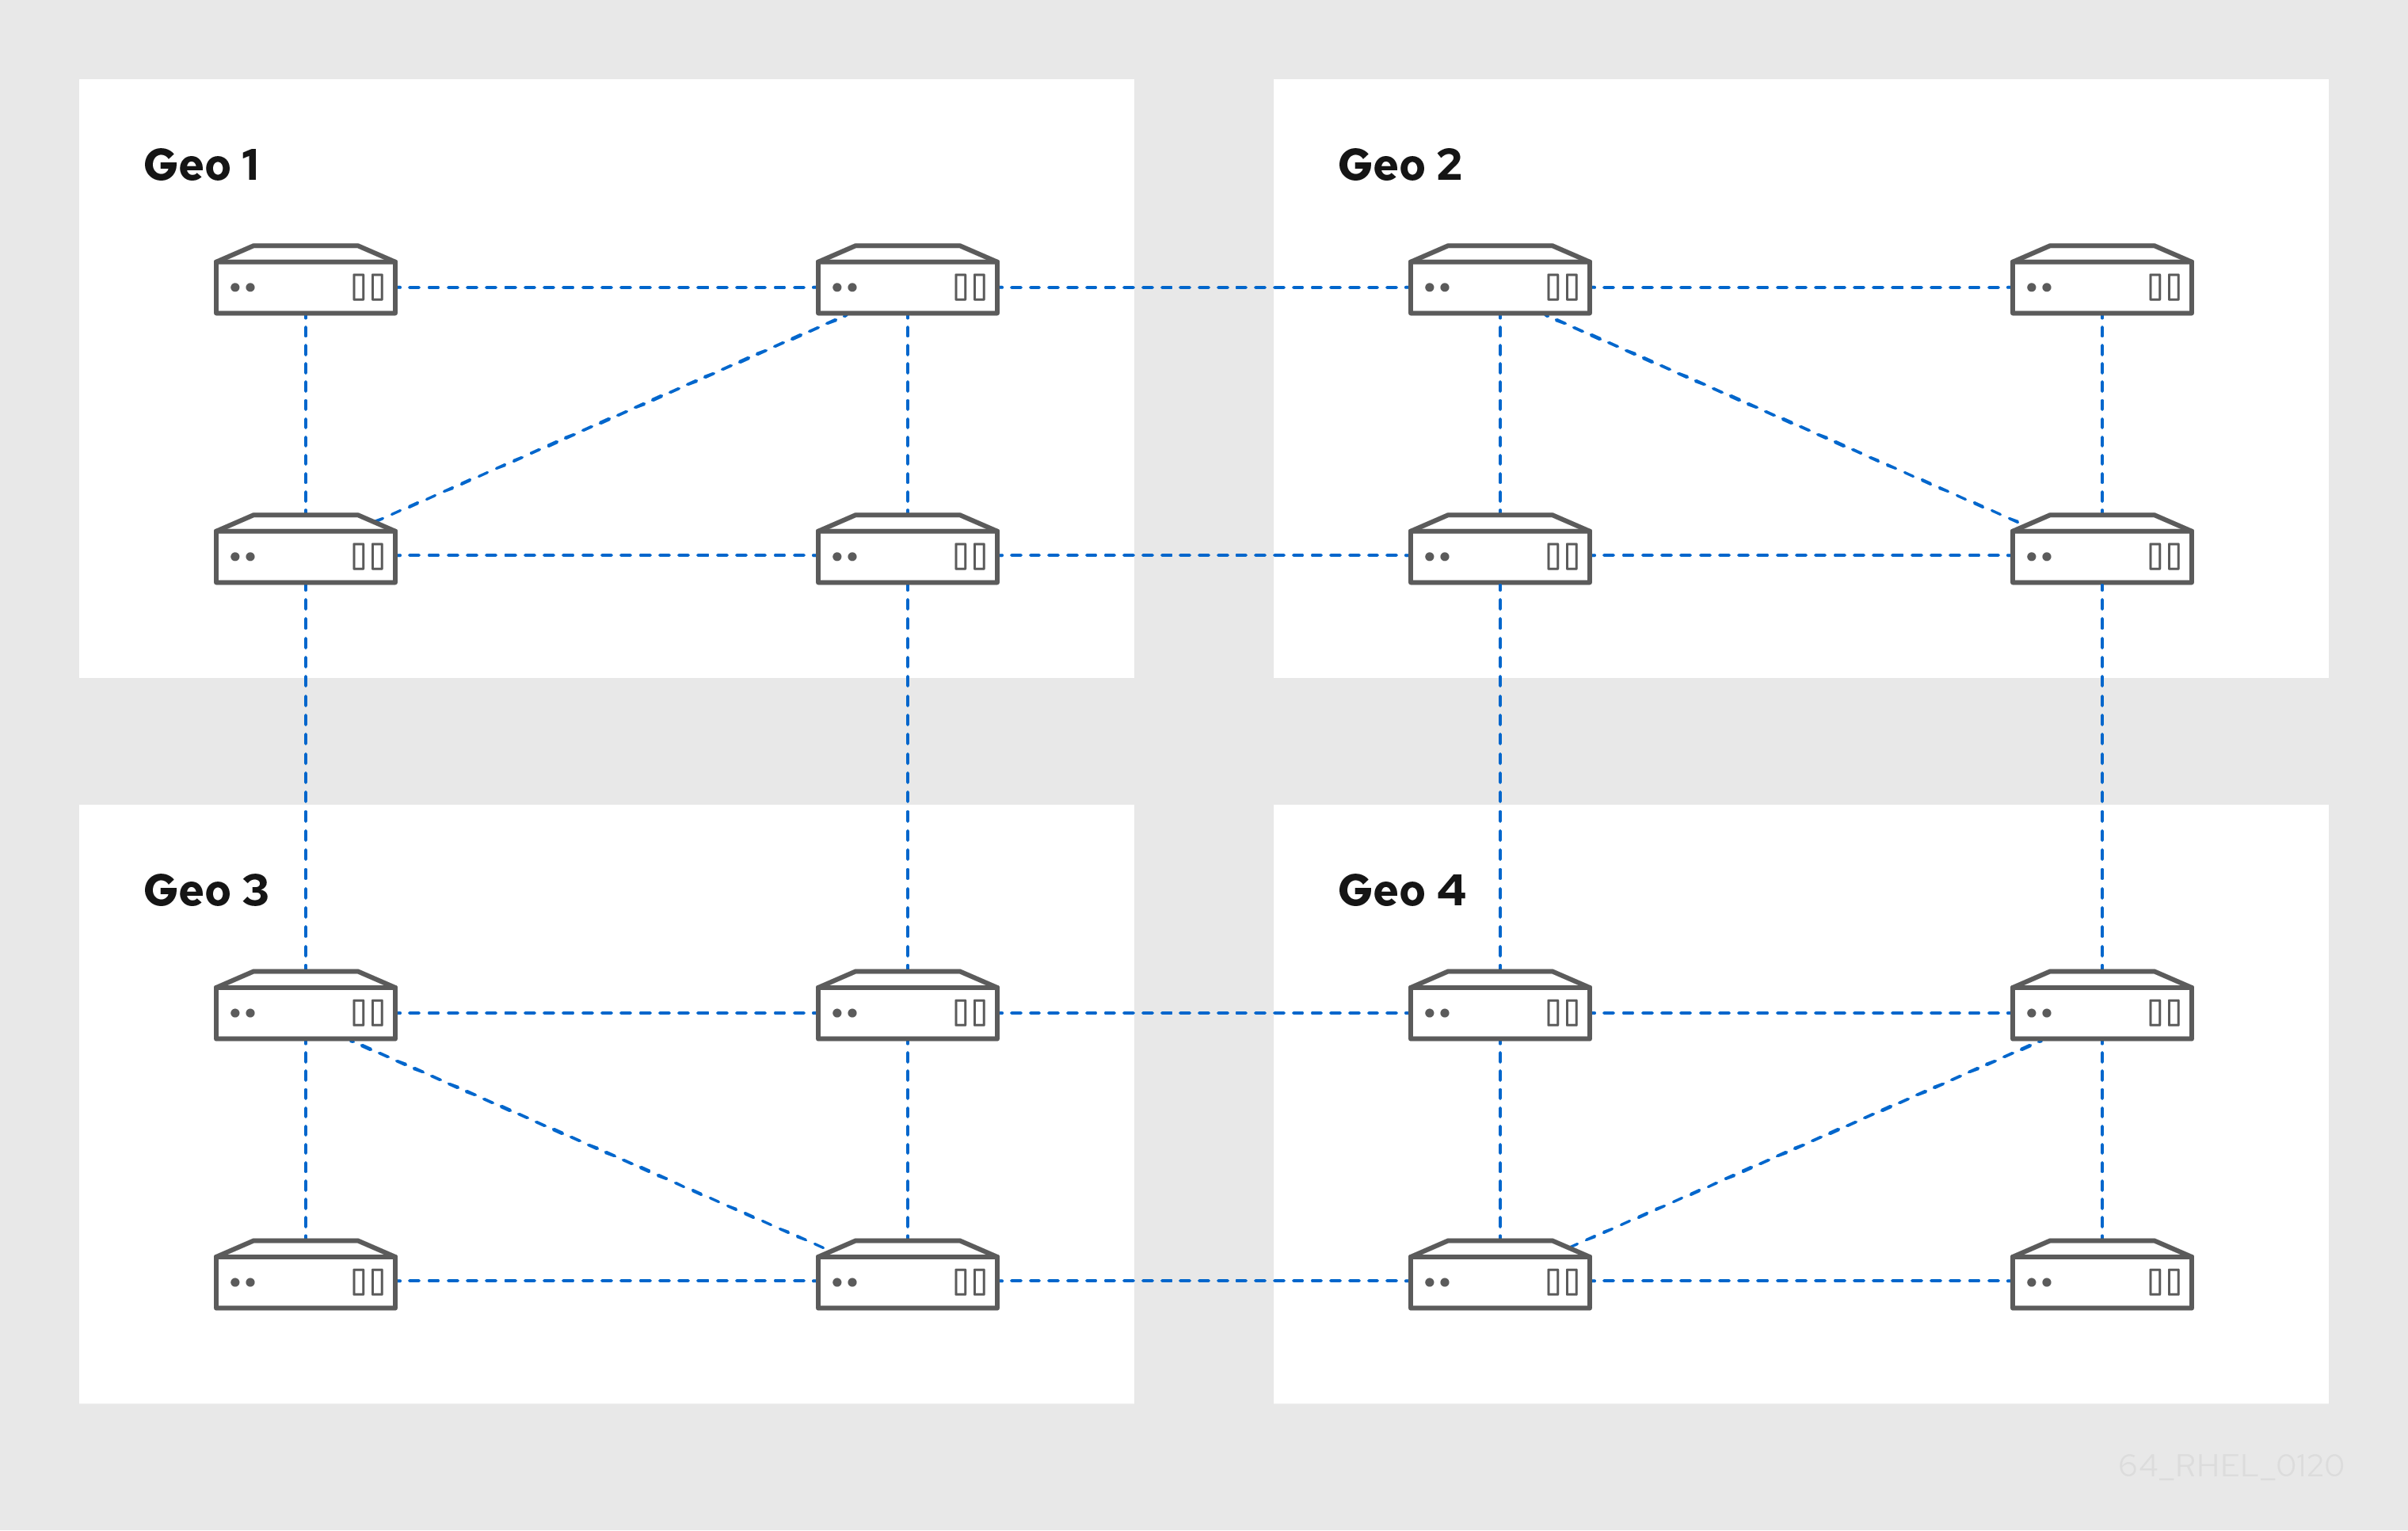 4개의 데이터 센터 - Geo 1~4를 보여주는 다이어그램입니다. 각 데이터 센터에는 복제 계약을 통해 서로 연결된 네 개의 서버가 있습니다. 또한 Geo 1의 두 서버에서 Geo 2의 서버를 연결하는 복제 계약도 있습니다. 이 패턴은 Geo 3의 두 서버 및 Geo 4에 연결된 Geo 3의 두 서버에 연결된 Geo 2의 서버를 계속합니다. 이렇게 하면 각 데이터 센터가 연결되어 있으므로 각 서버는 다른 지역으로부터 최대 3홉 떨어져 있습니다.